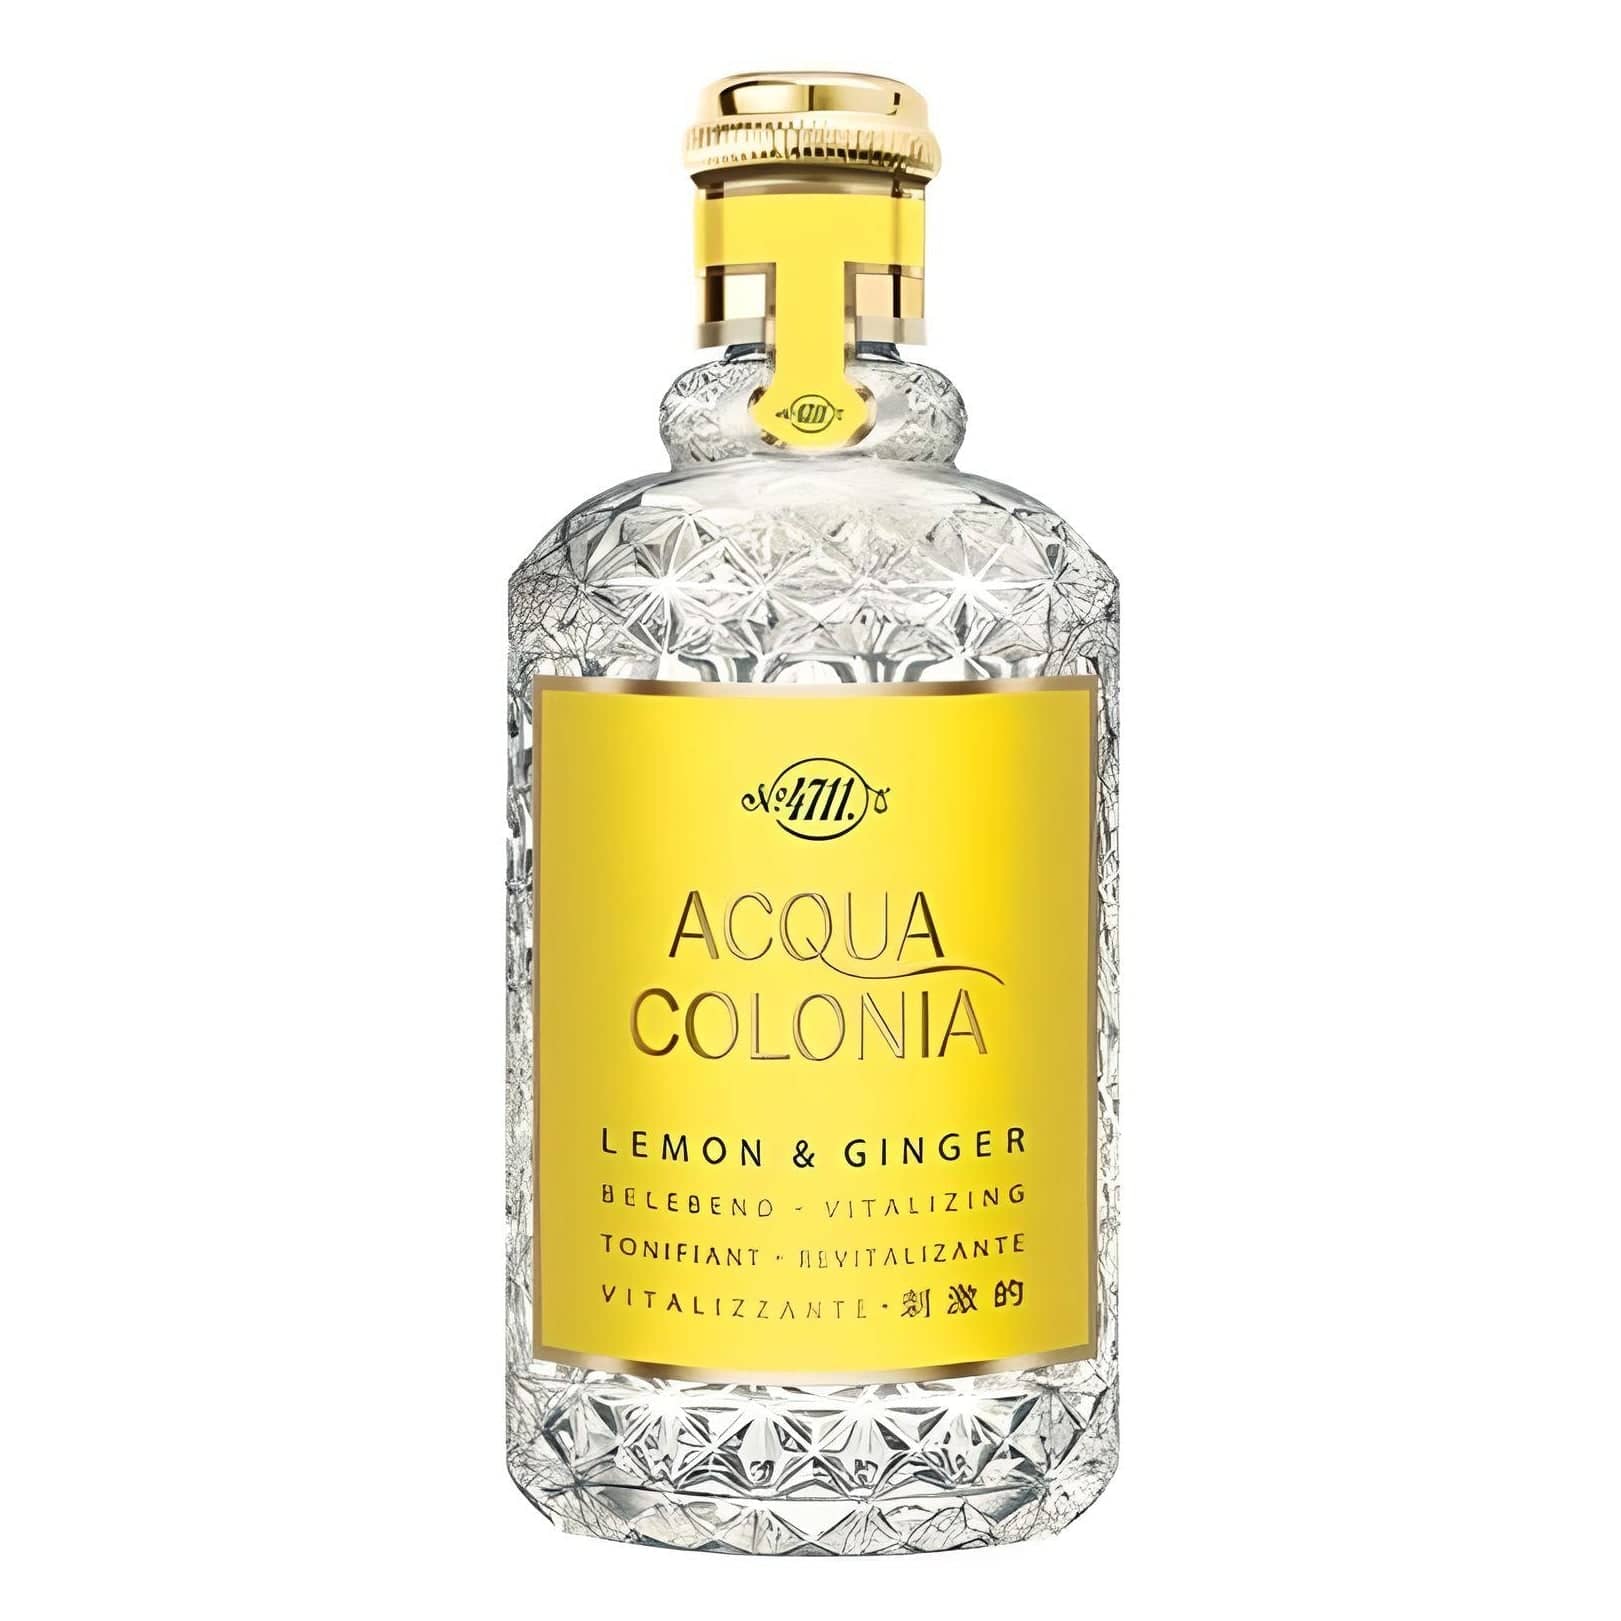 ACQUA COLONIA Lemon & Ginger Eau de Cologne